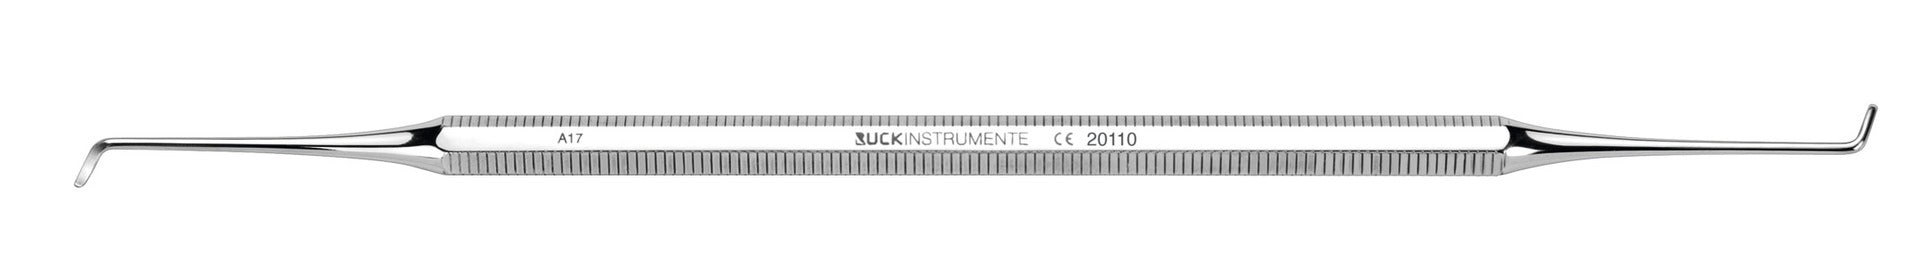 Curette double - Longueur : 17 cm - Ruck